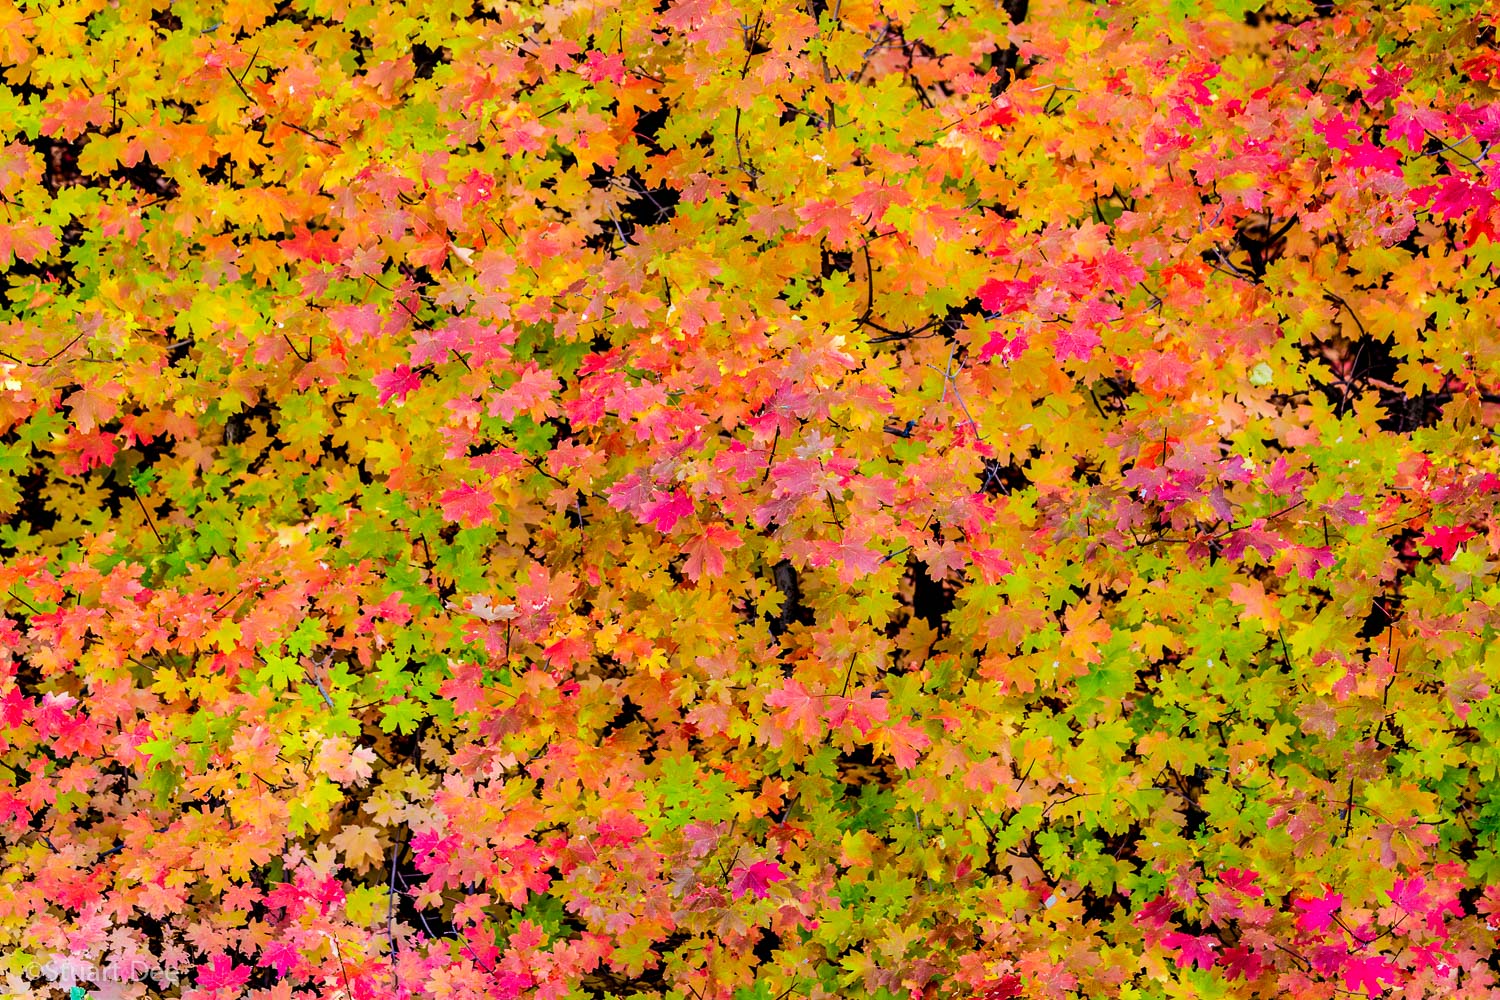  Fall colors, Utah, USA 